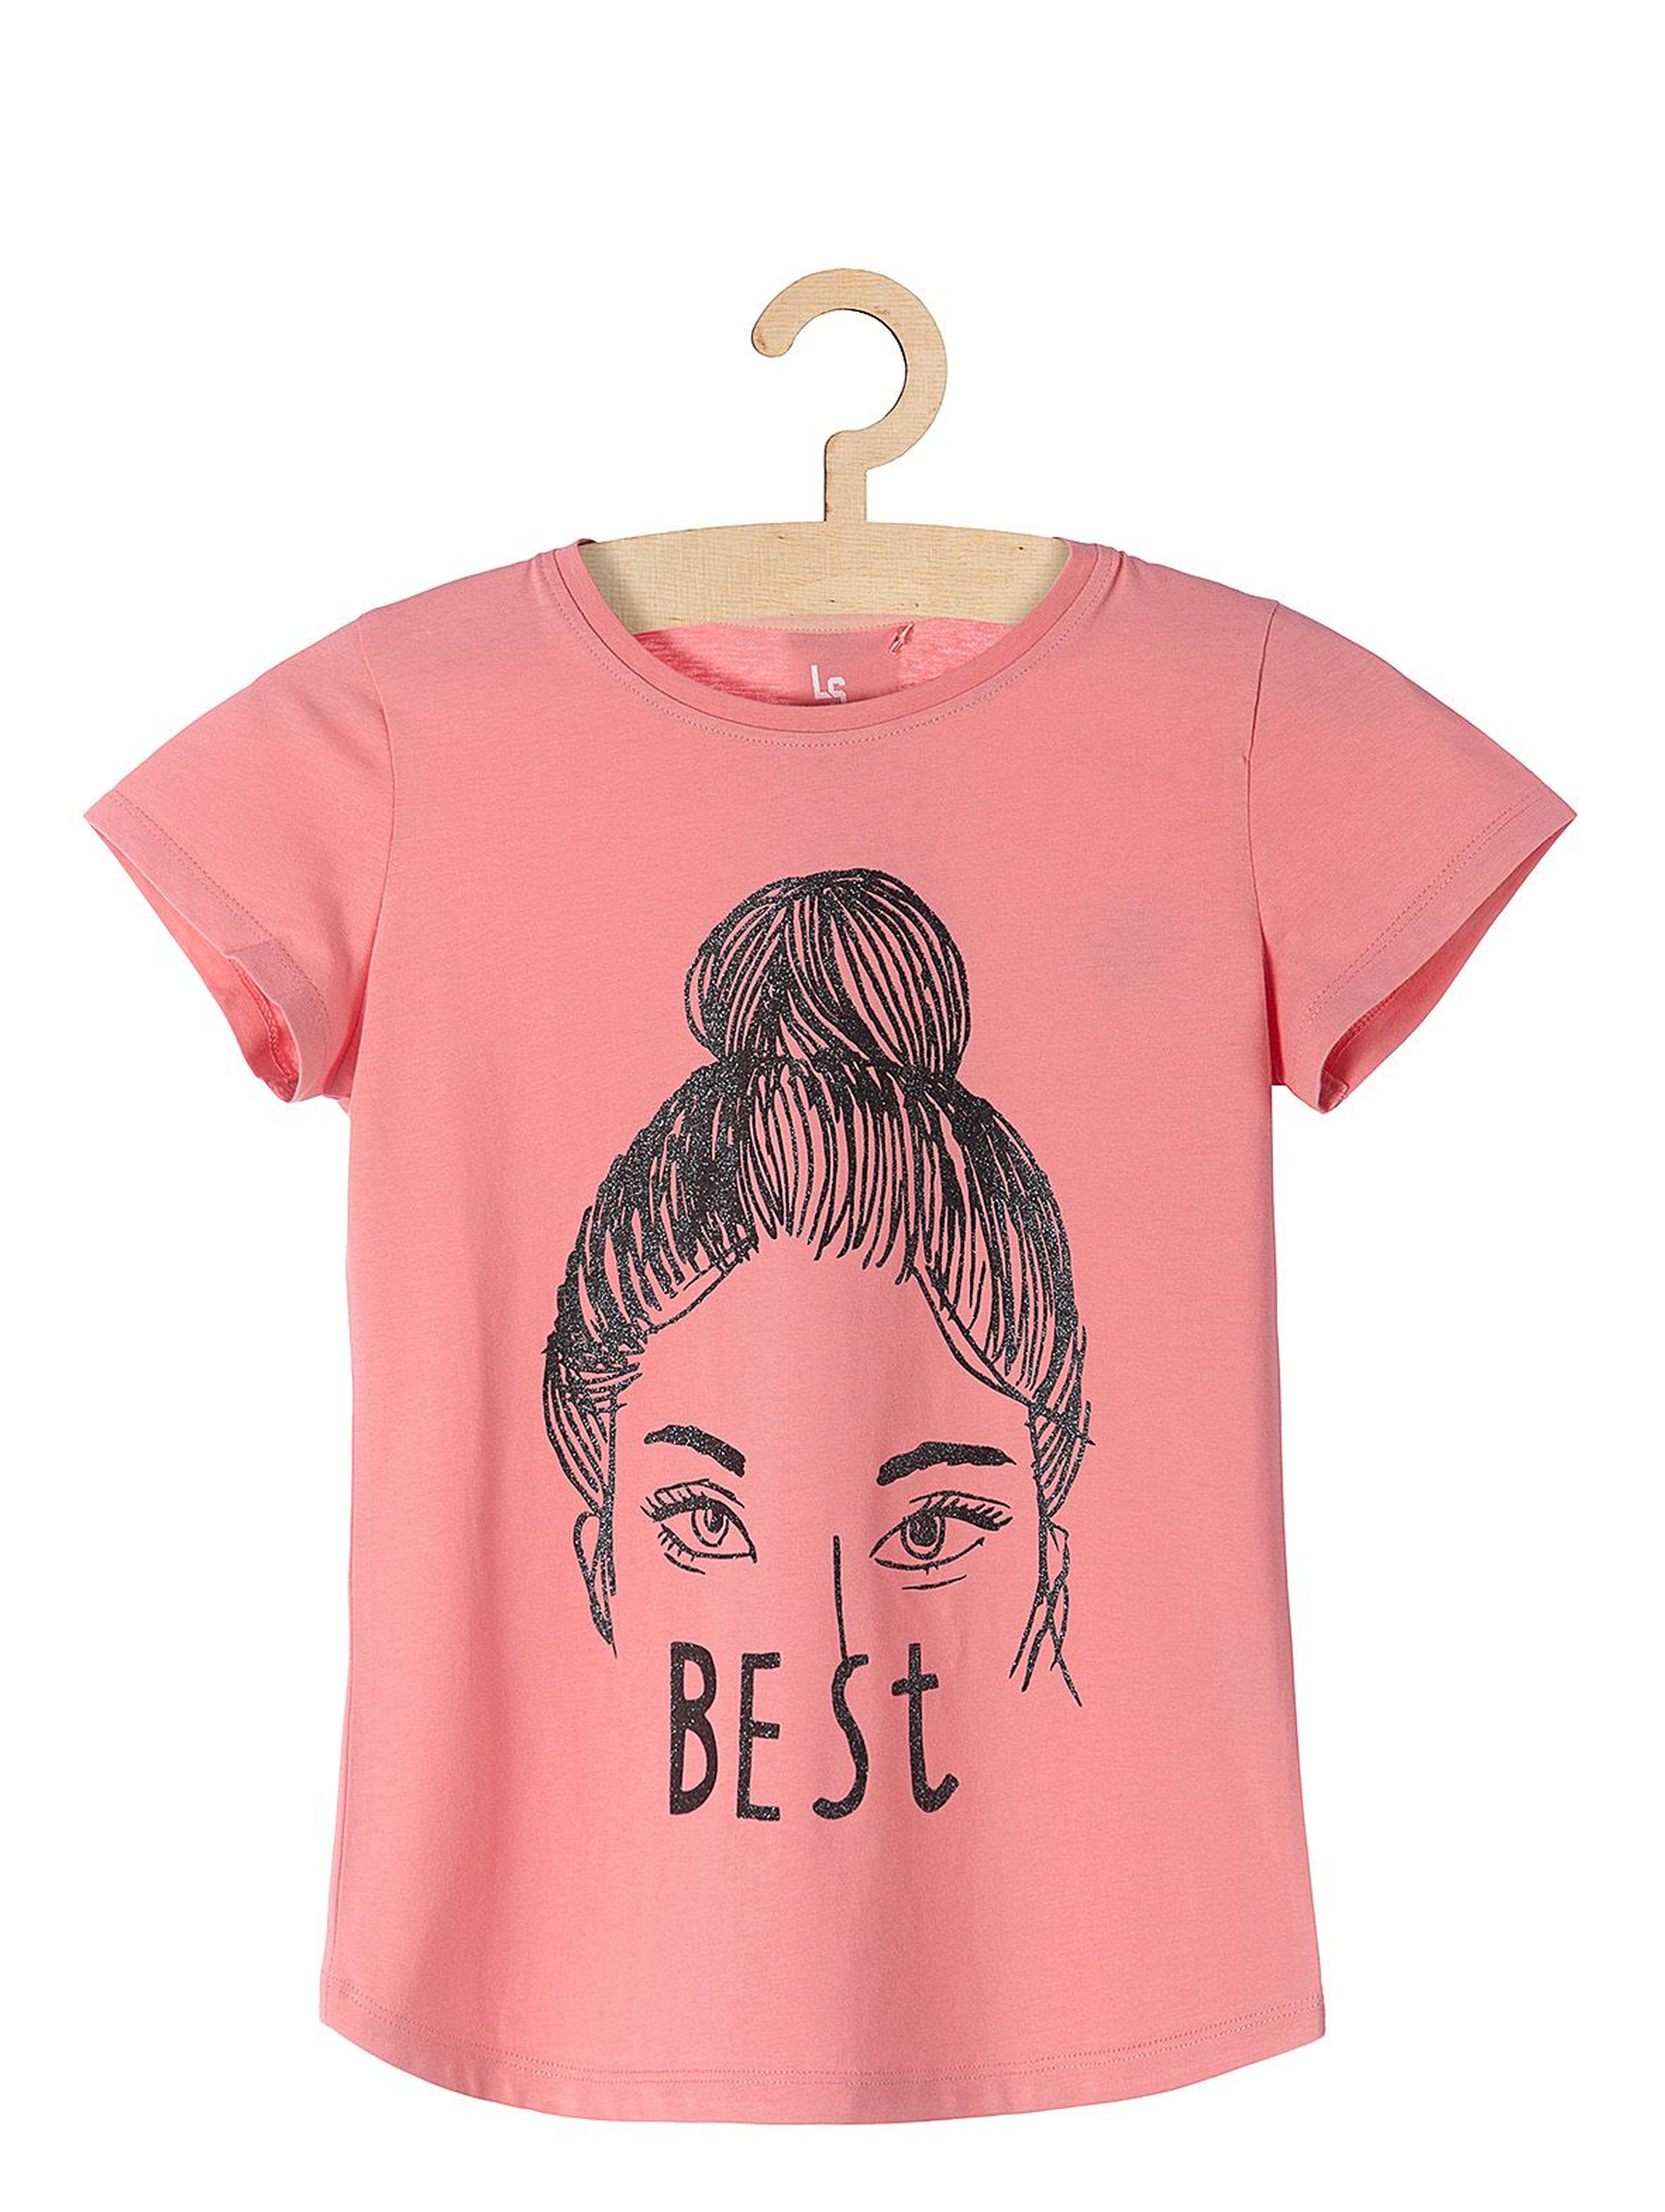 T-shirt dla dziewczynki Best